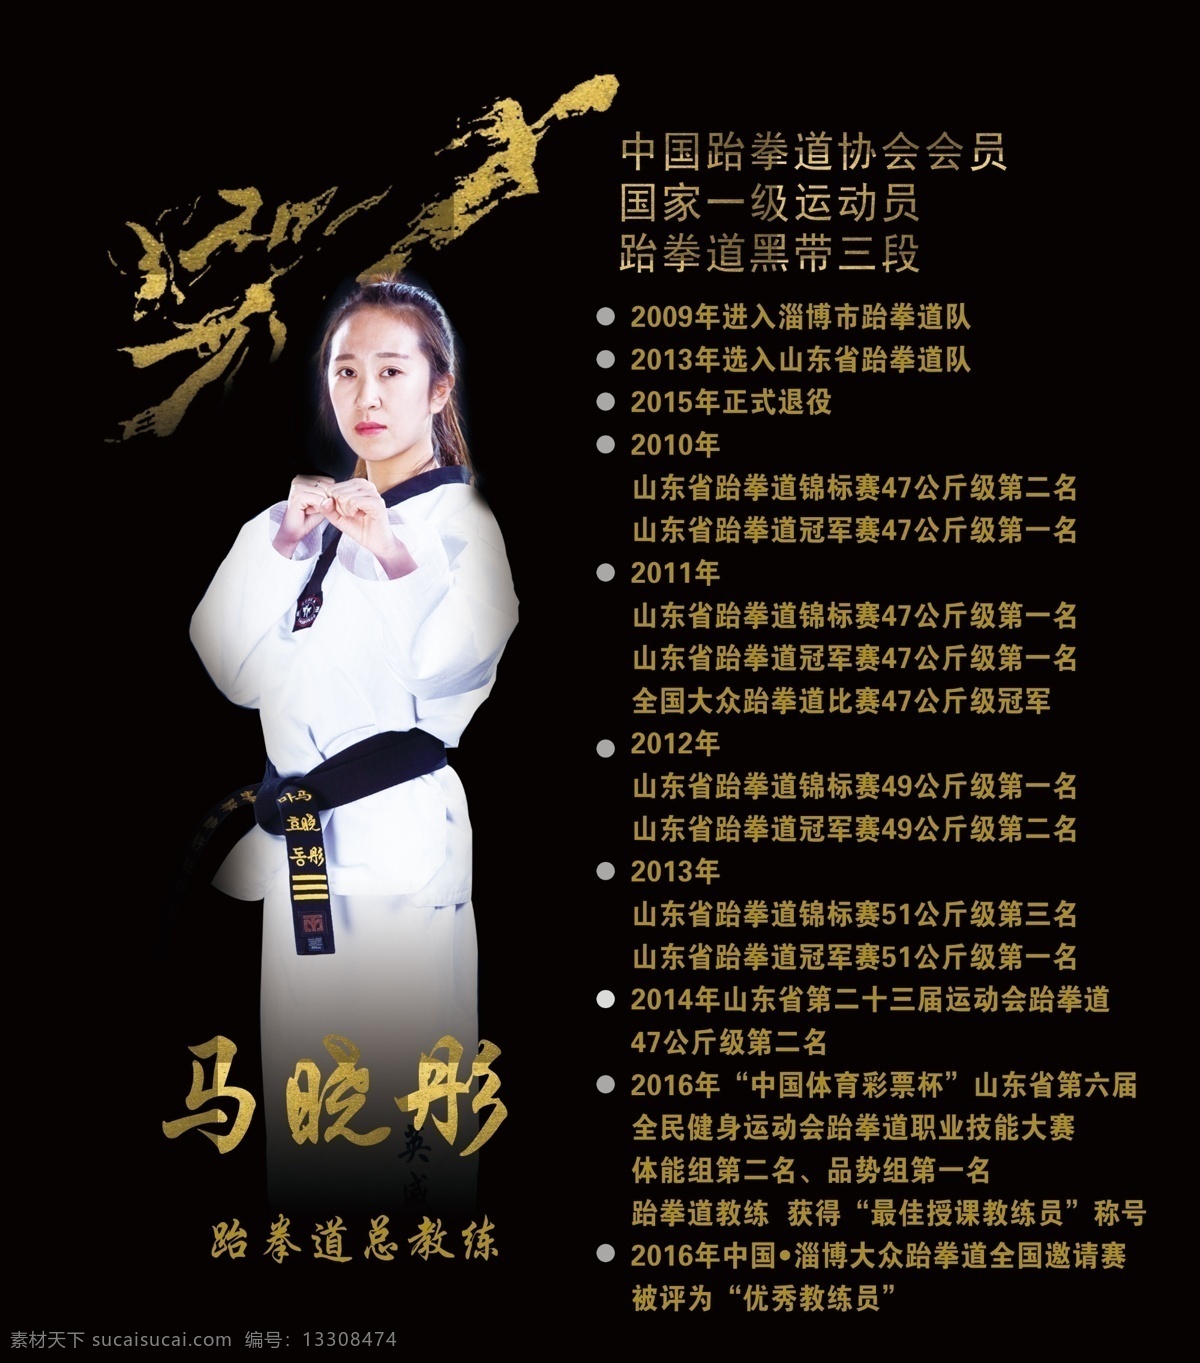 跆拳道 教练 简介 宣传 介绍 展板 英威 系列 dm宣传单